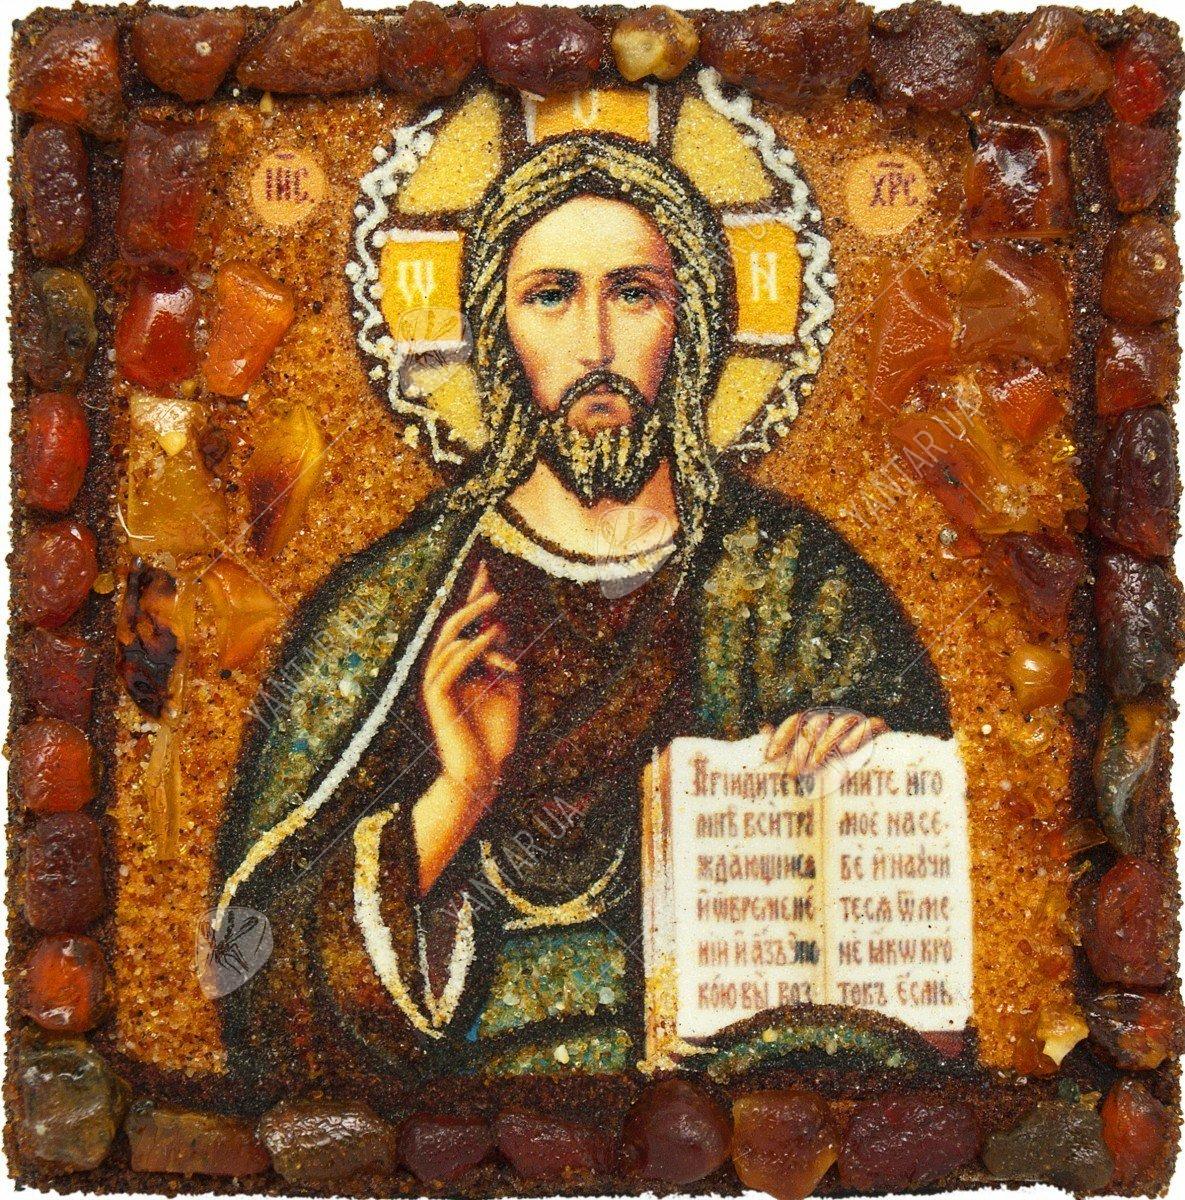 Сувенирный магнит-оберег «Иисус Христос» (Казанская икона)